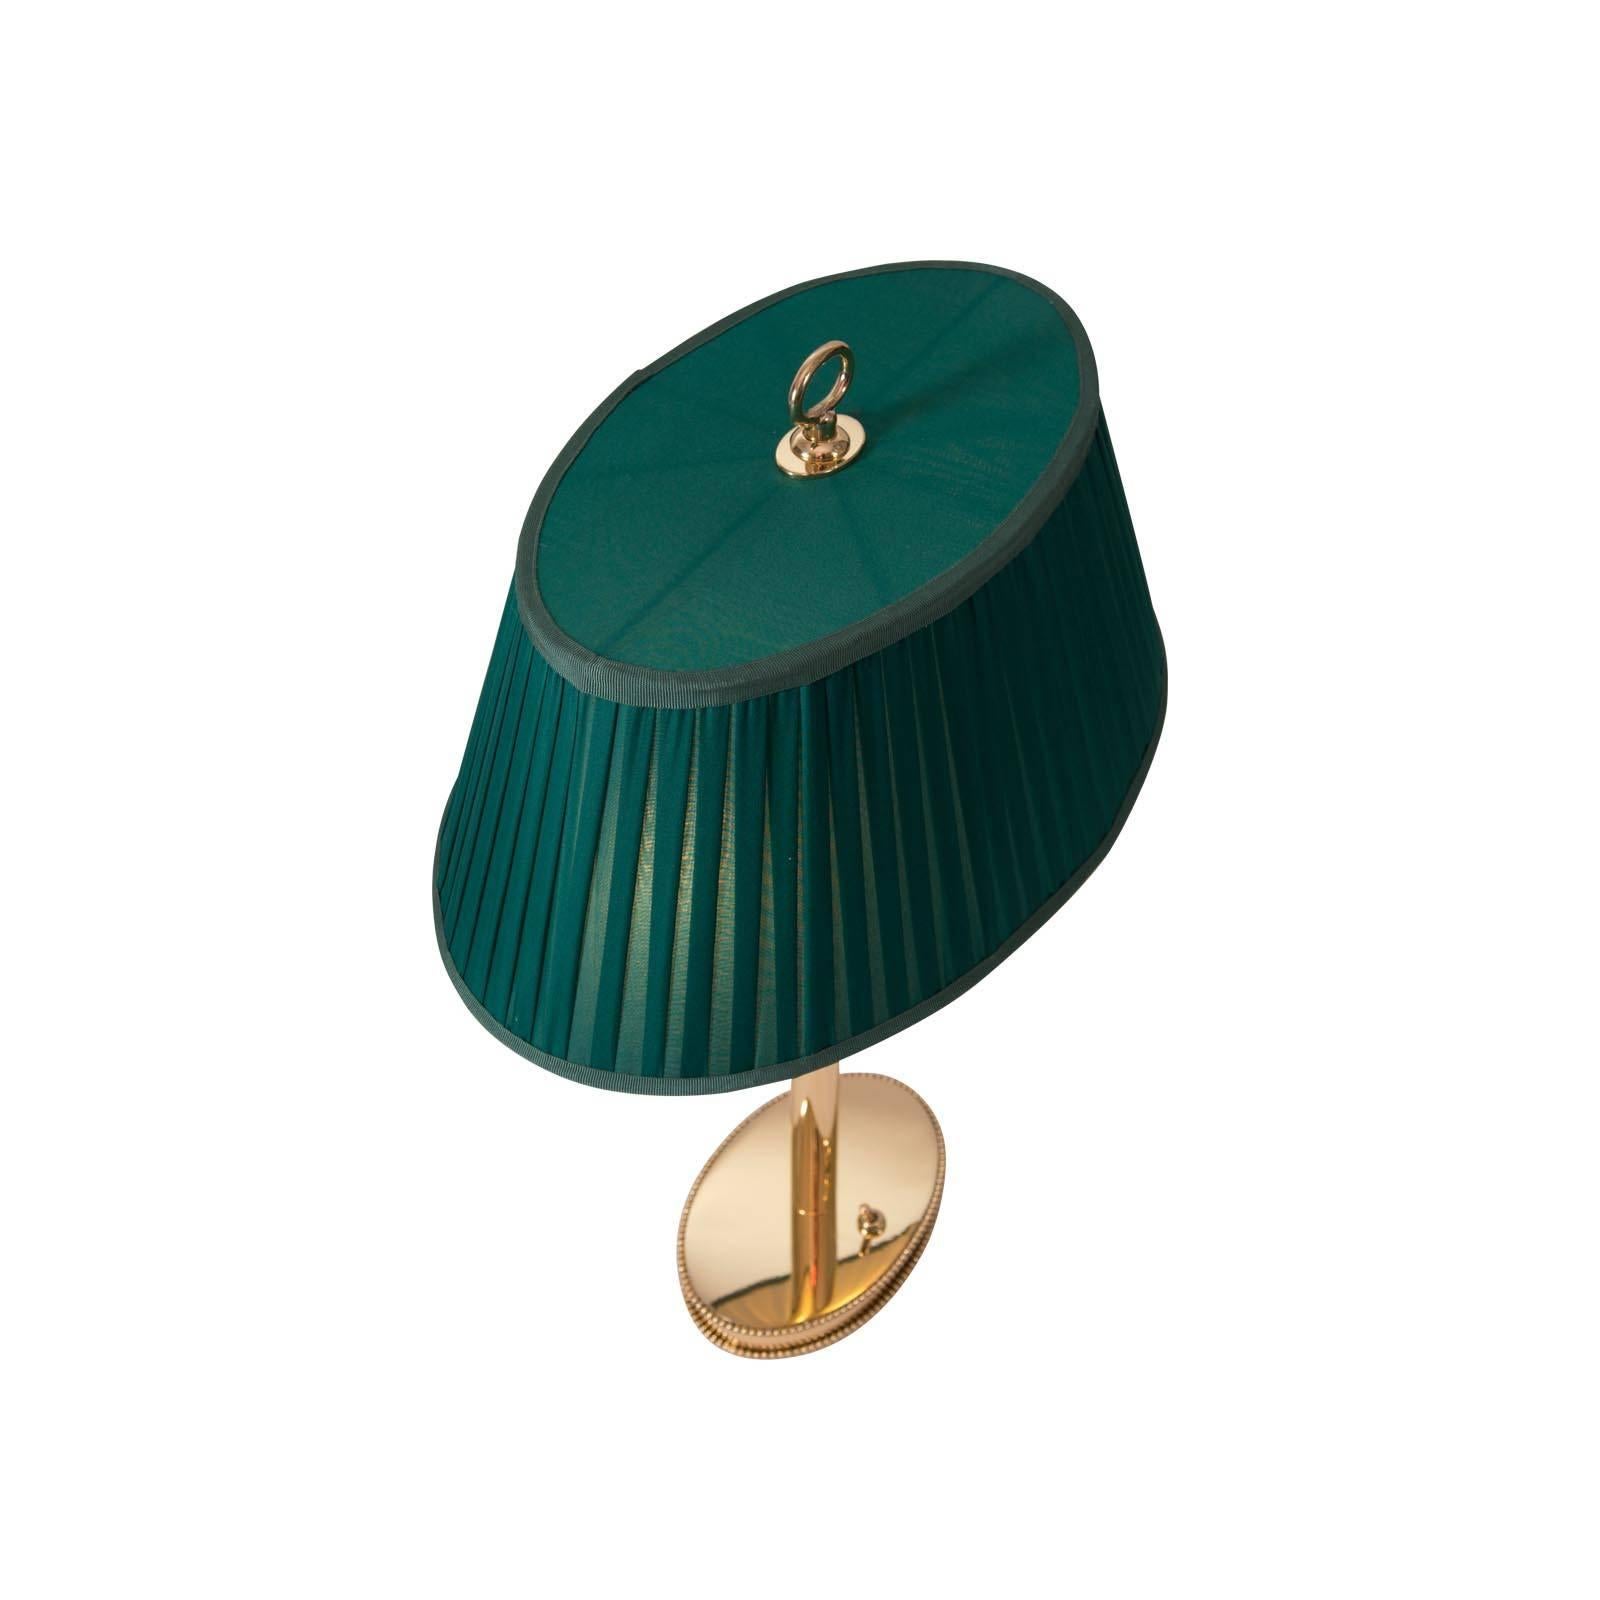 Une lampe de table Josef Hoffmann avec un abat-jour en tissu - différentes couleurs sont disponibles.
Fabriqué à l'origine à l'atelier Wiener Werkstätte, maintenant fabriqué sur mesure à l'atelier Woka Lamps à Vienne.
Douilles : Deux douilles à vis